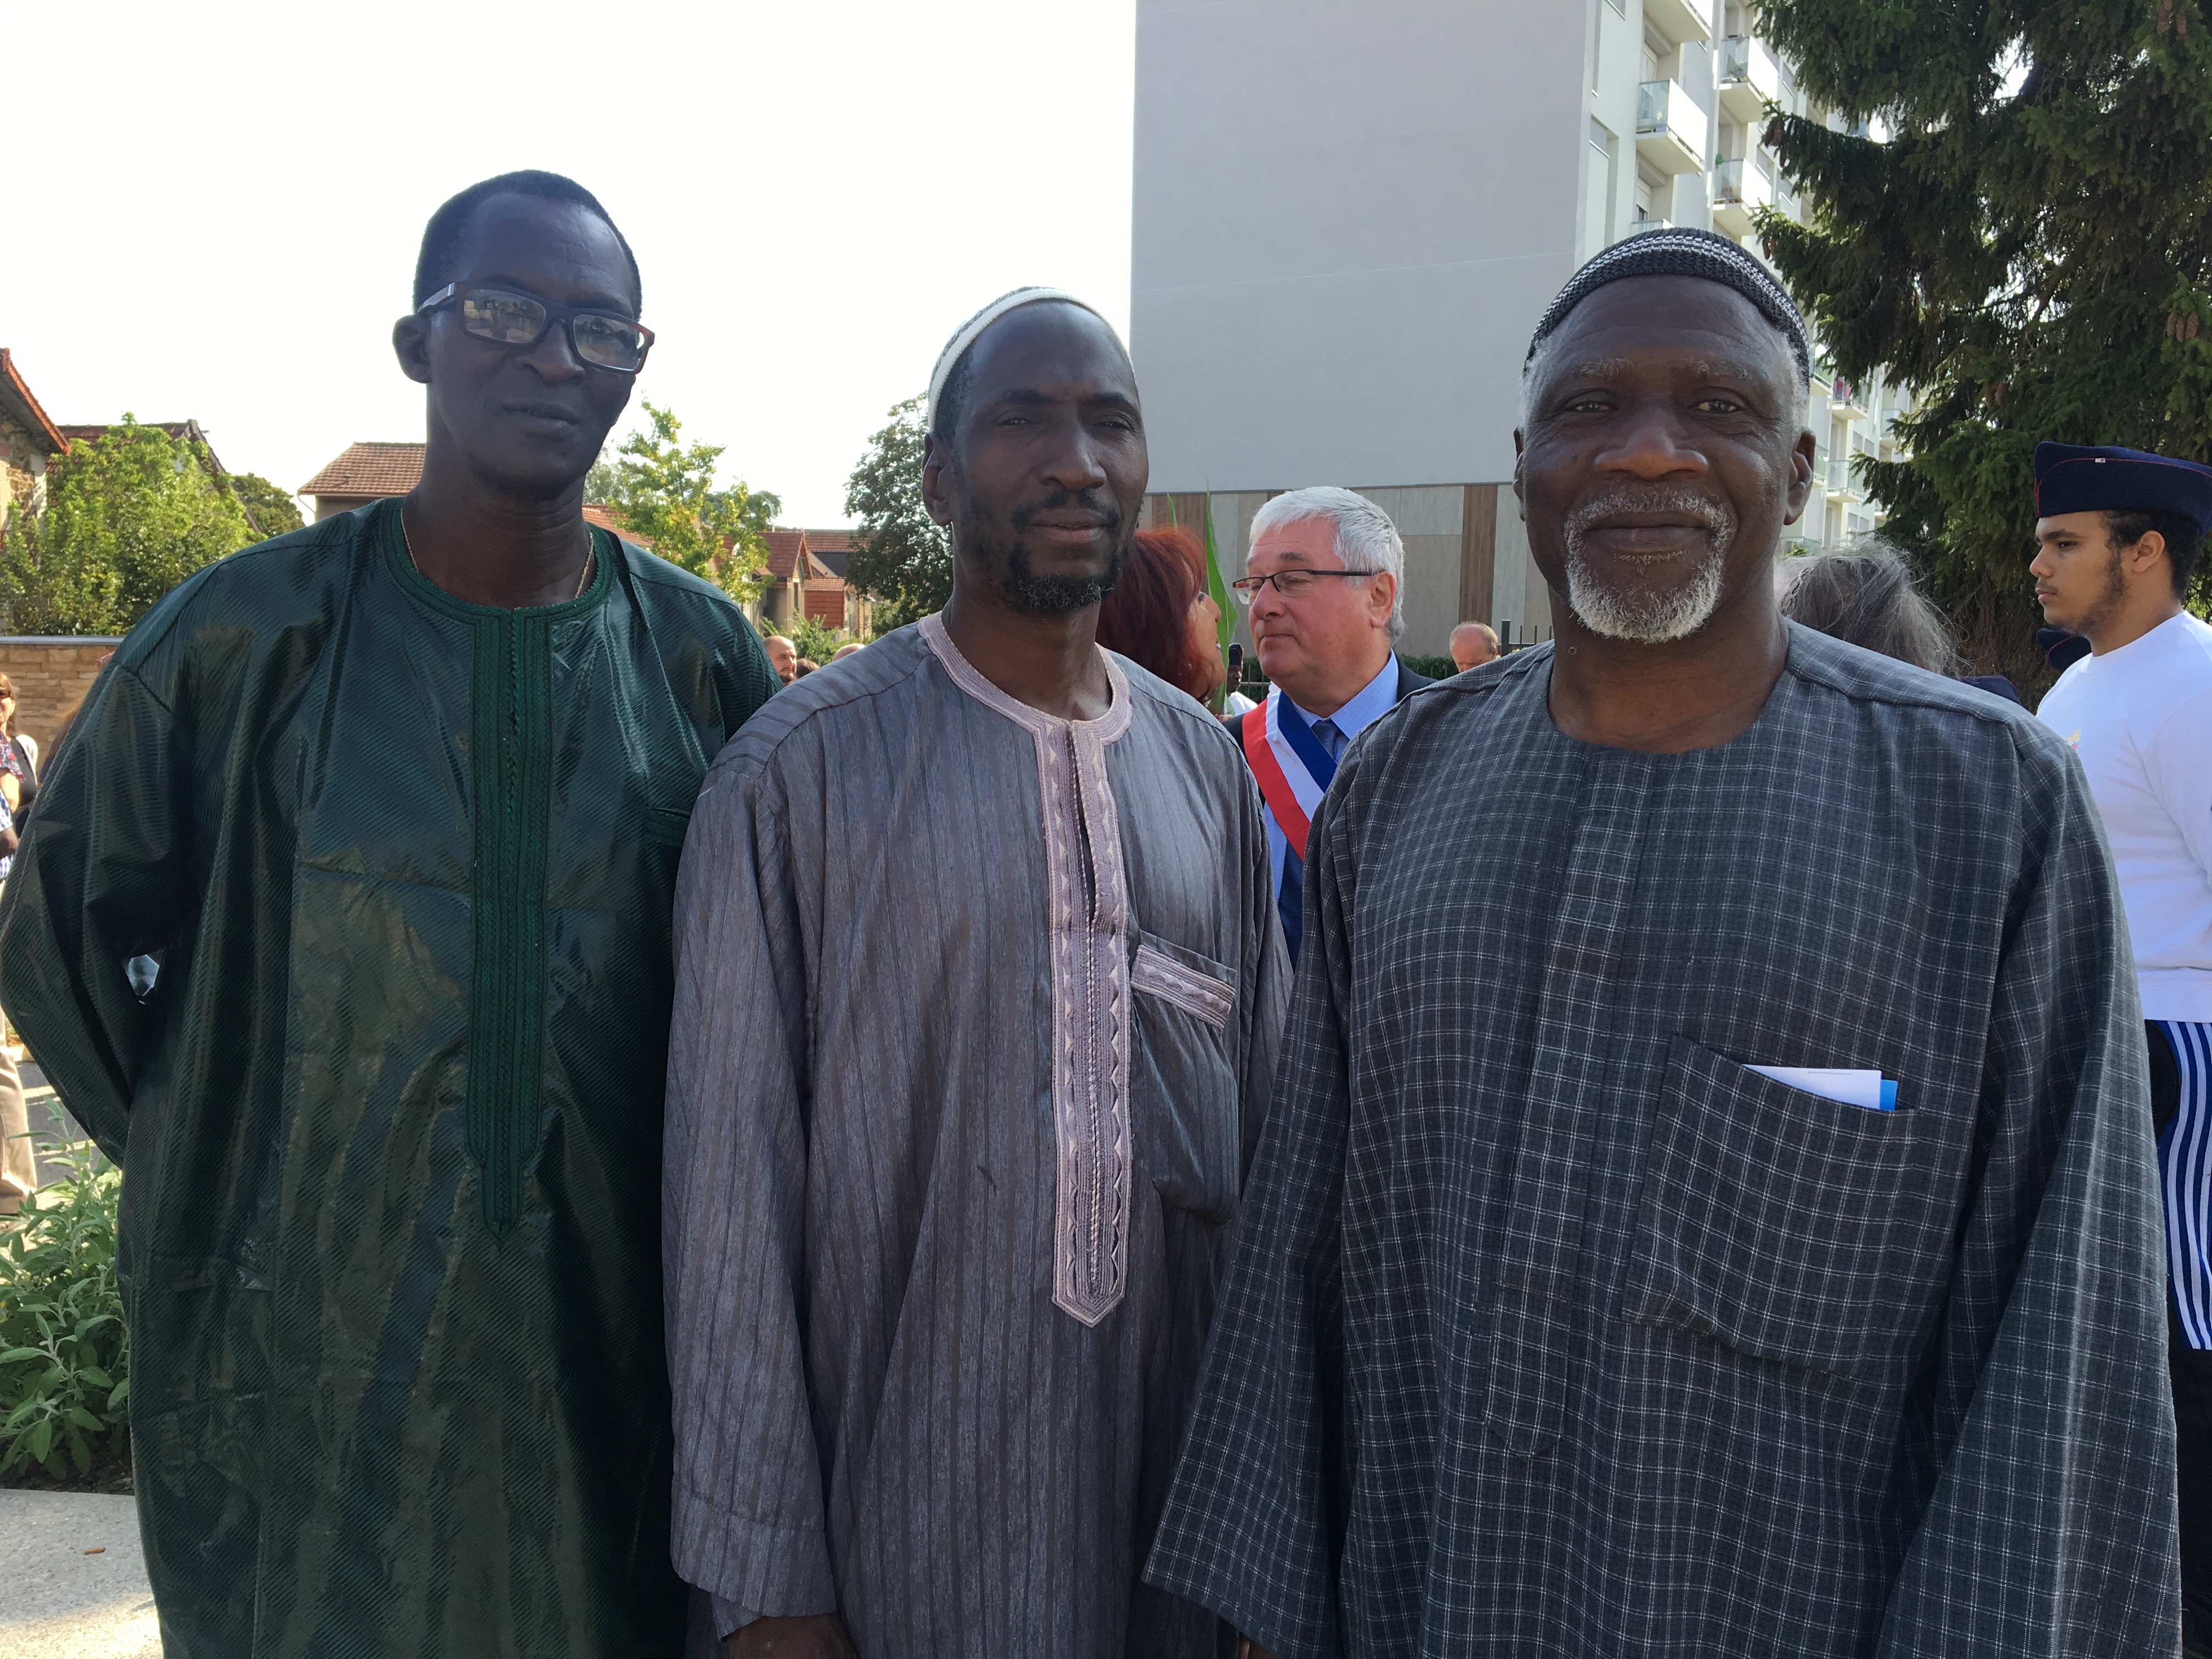 À gauche monsieur Salim Diabeté, fils de tirailleurs sénégalais accompagné par deux habitants de Pierrefitte, militants associatifs ©Miroir Citoyen